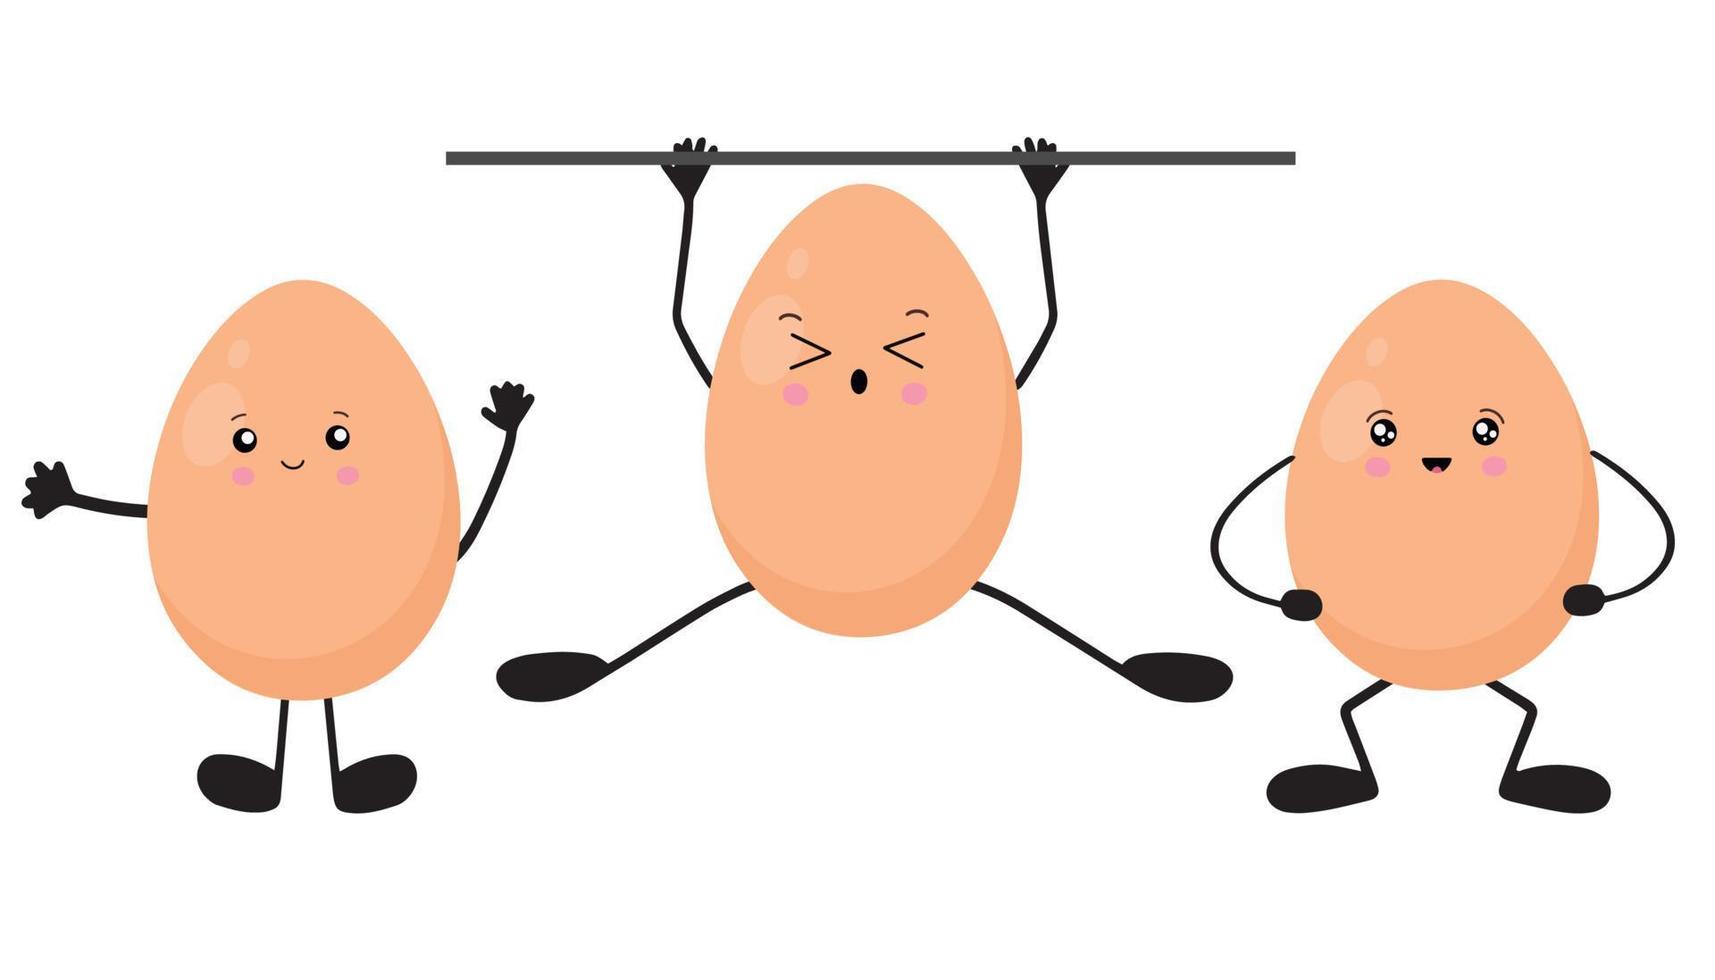 um conjunto de ovos no estilo kawaii. ilustração vetorial isolada em um fundo branco vetor